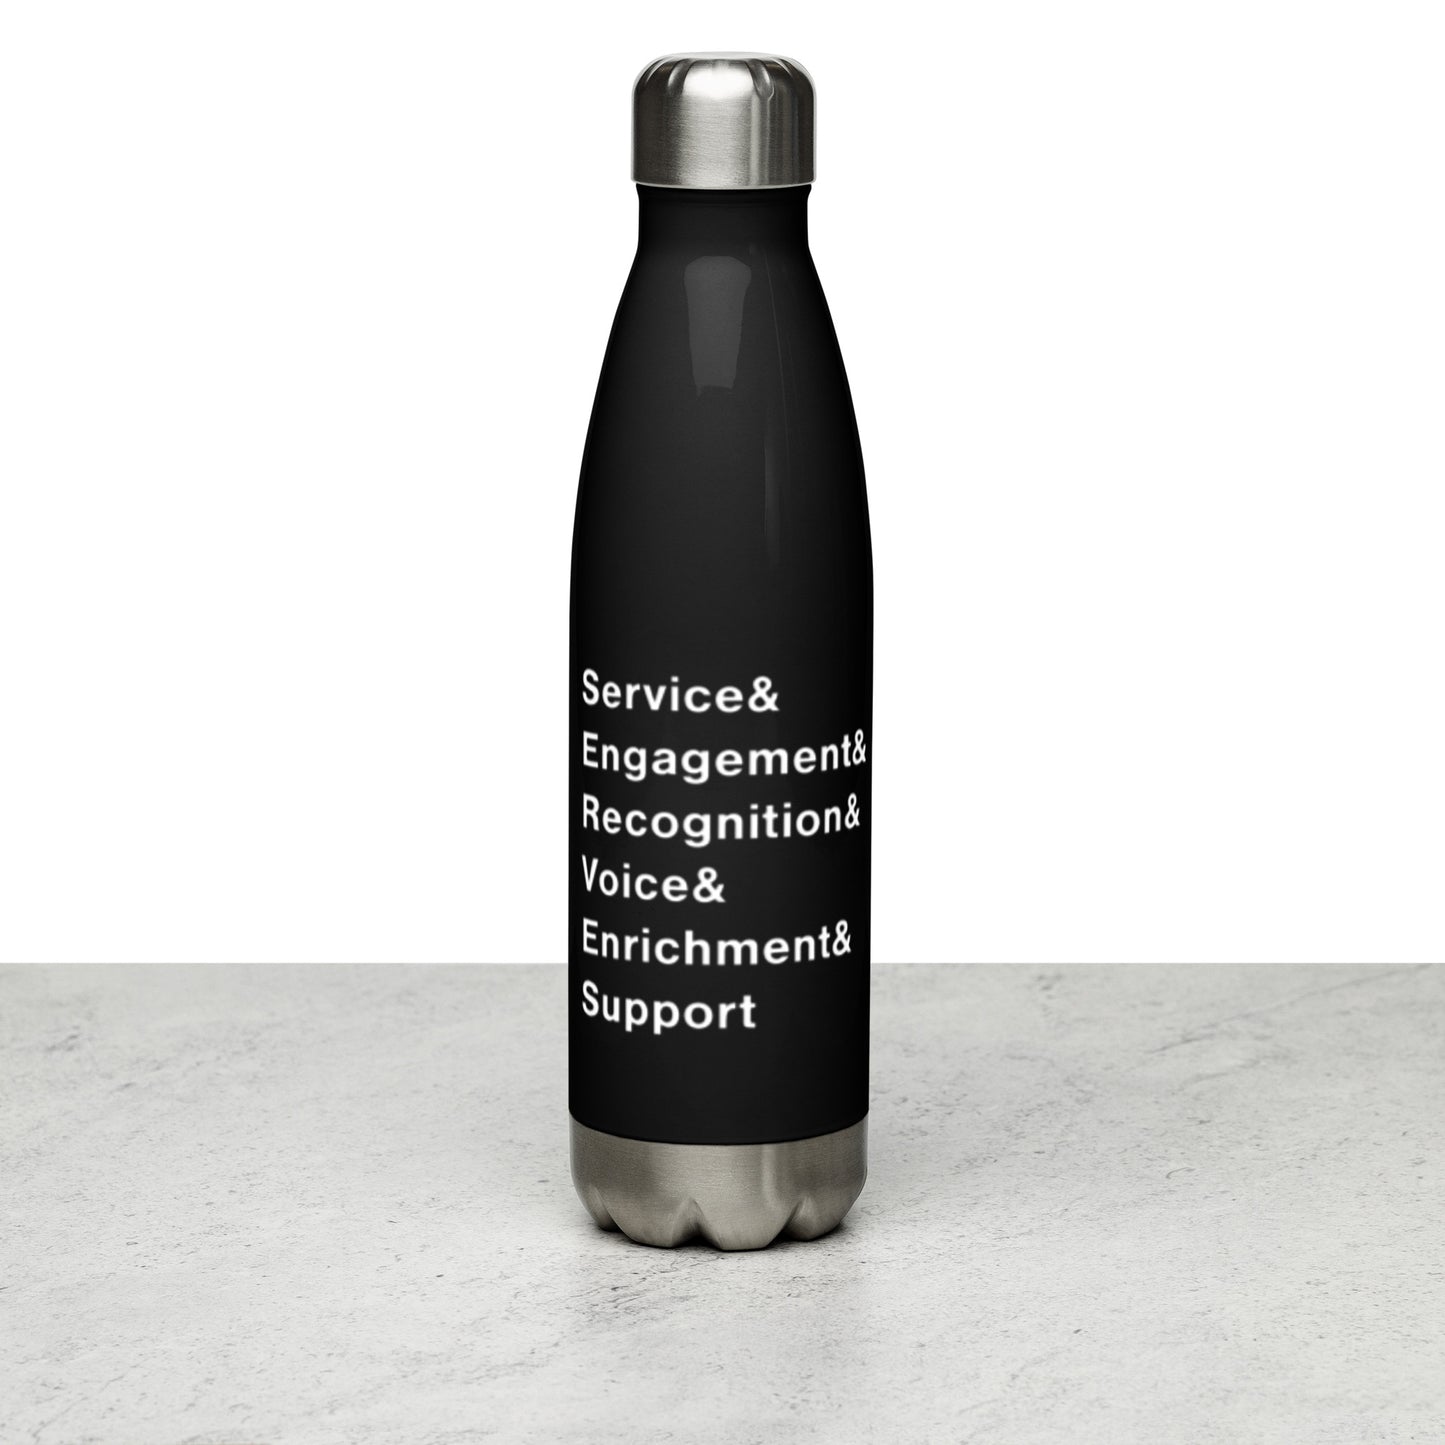 KYSCA Stainless Steel Water Bottle